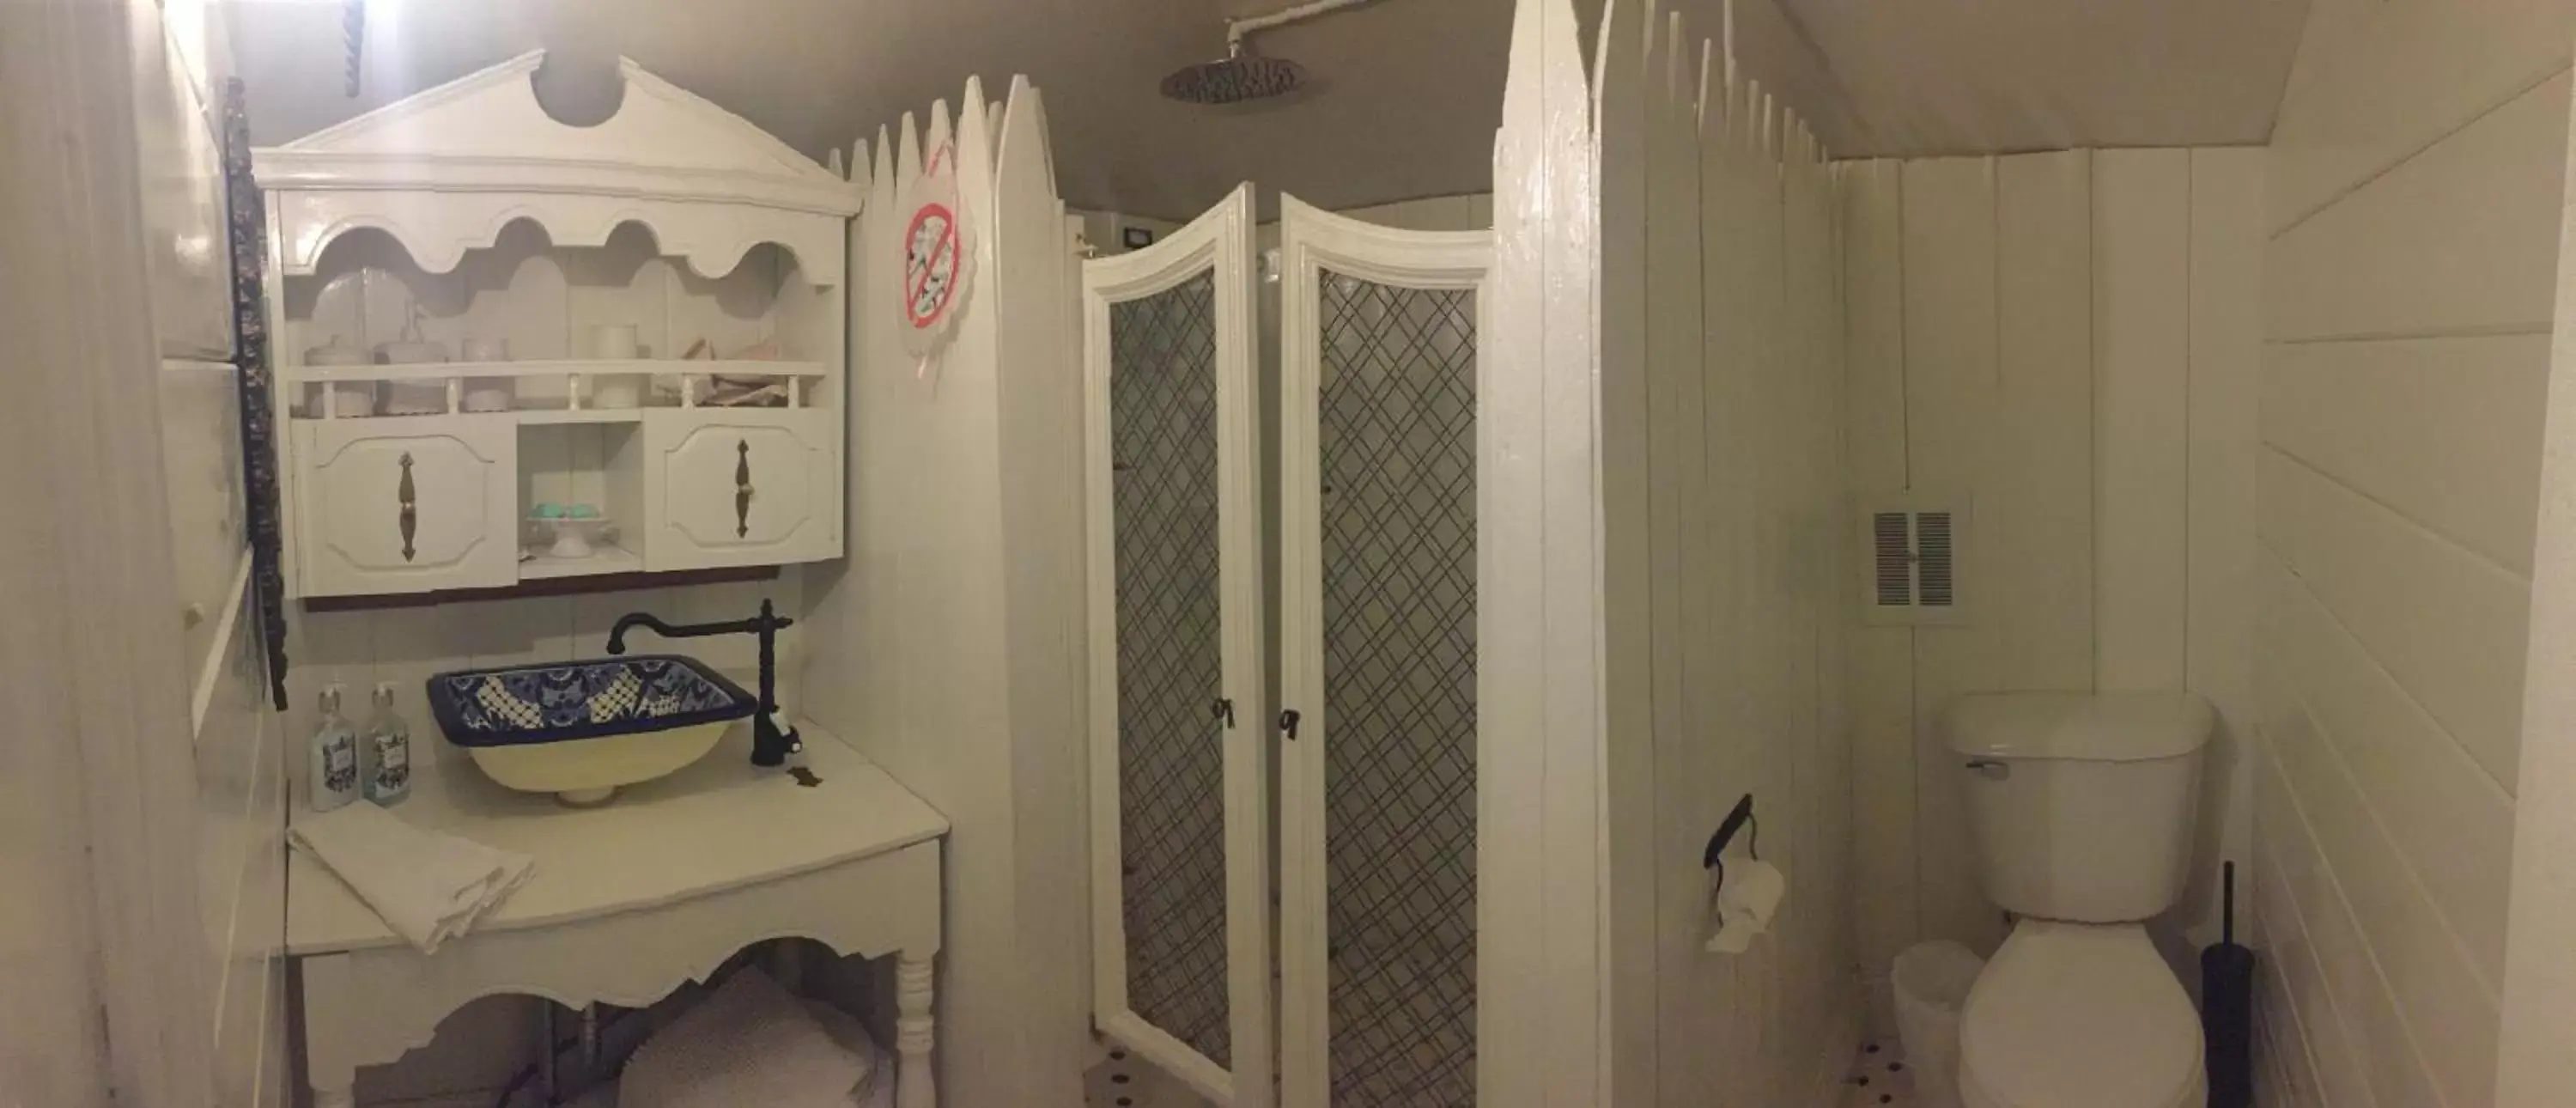 Shower, Bathroom in Aaron House of Niagara Falls